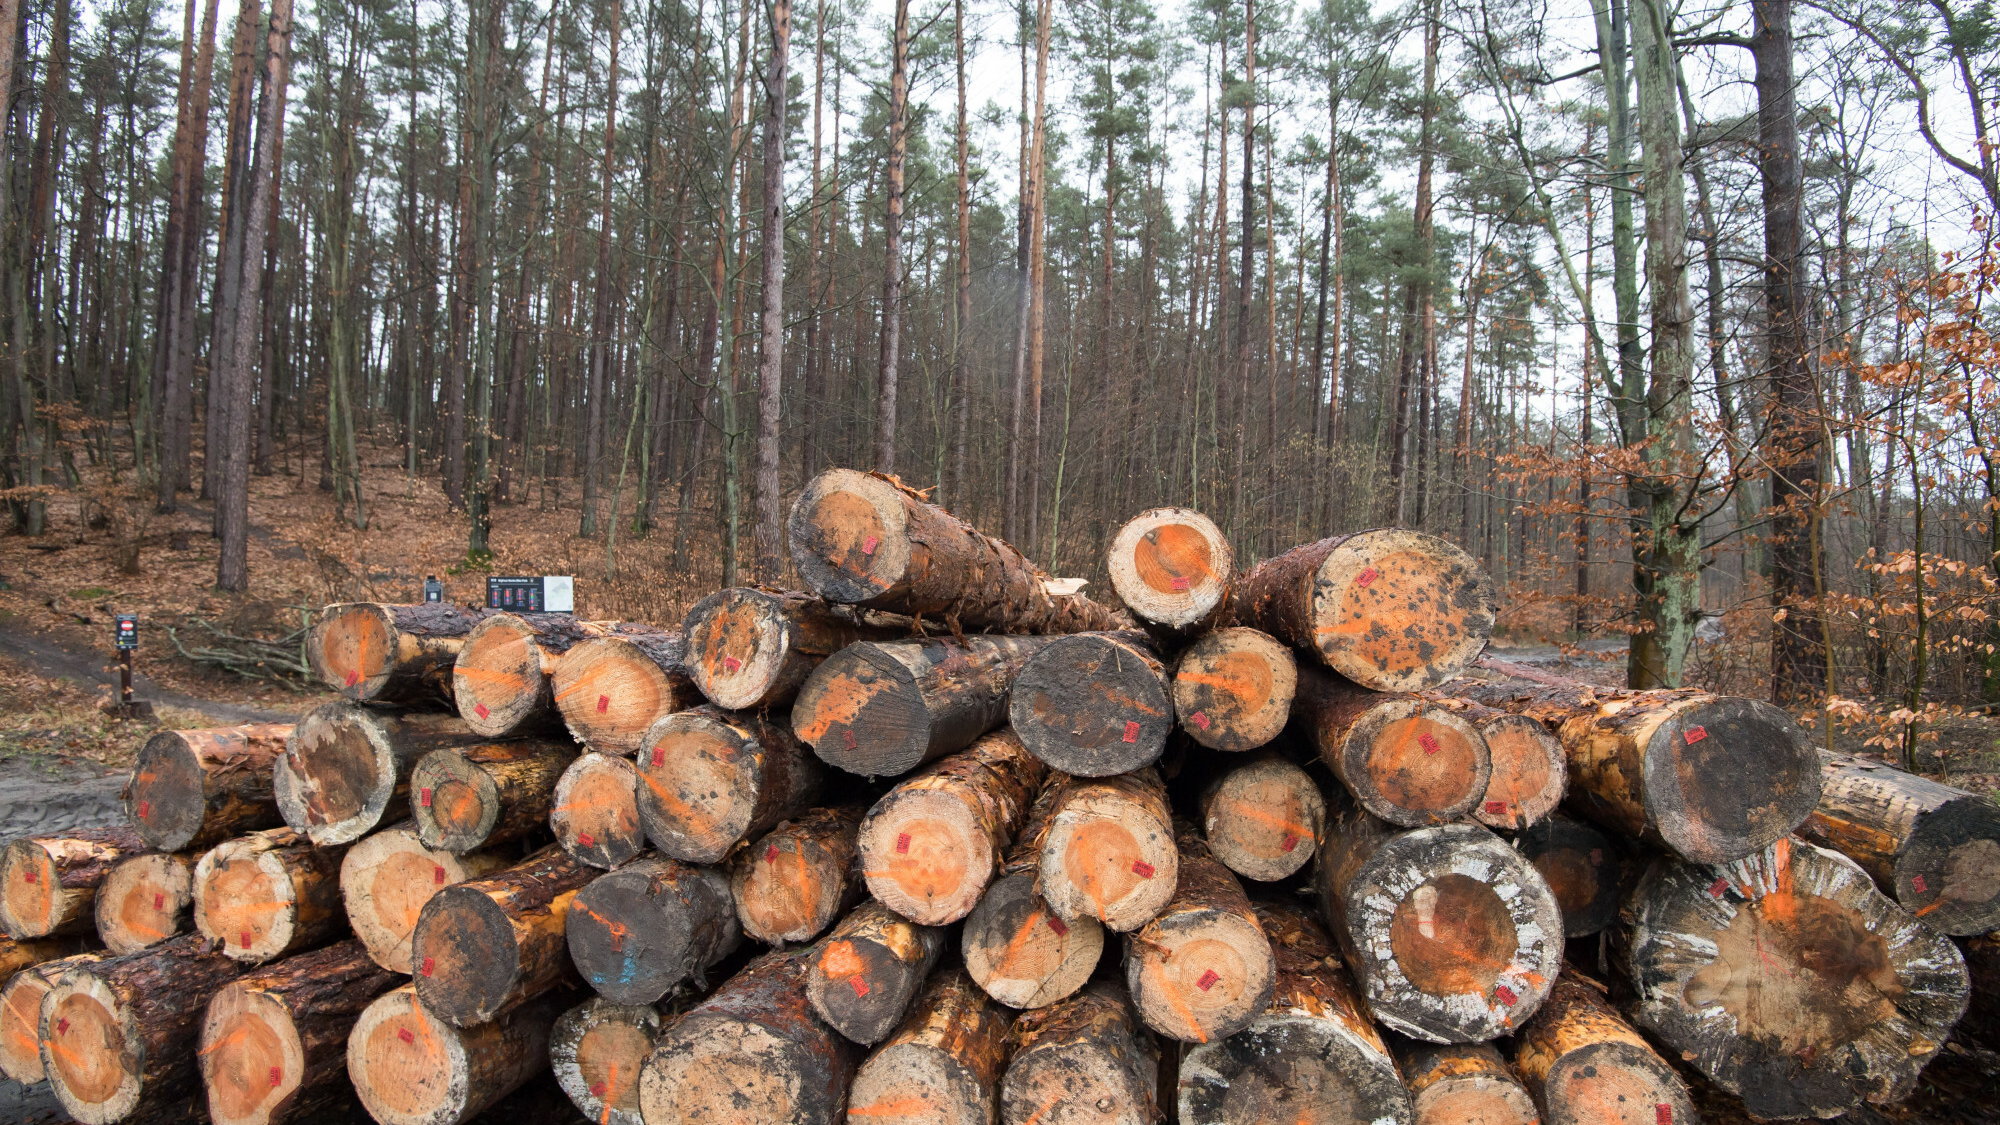 nowe zasady zarządzania polskimi lasami. jest propozycja leśników